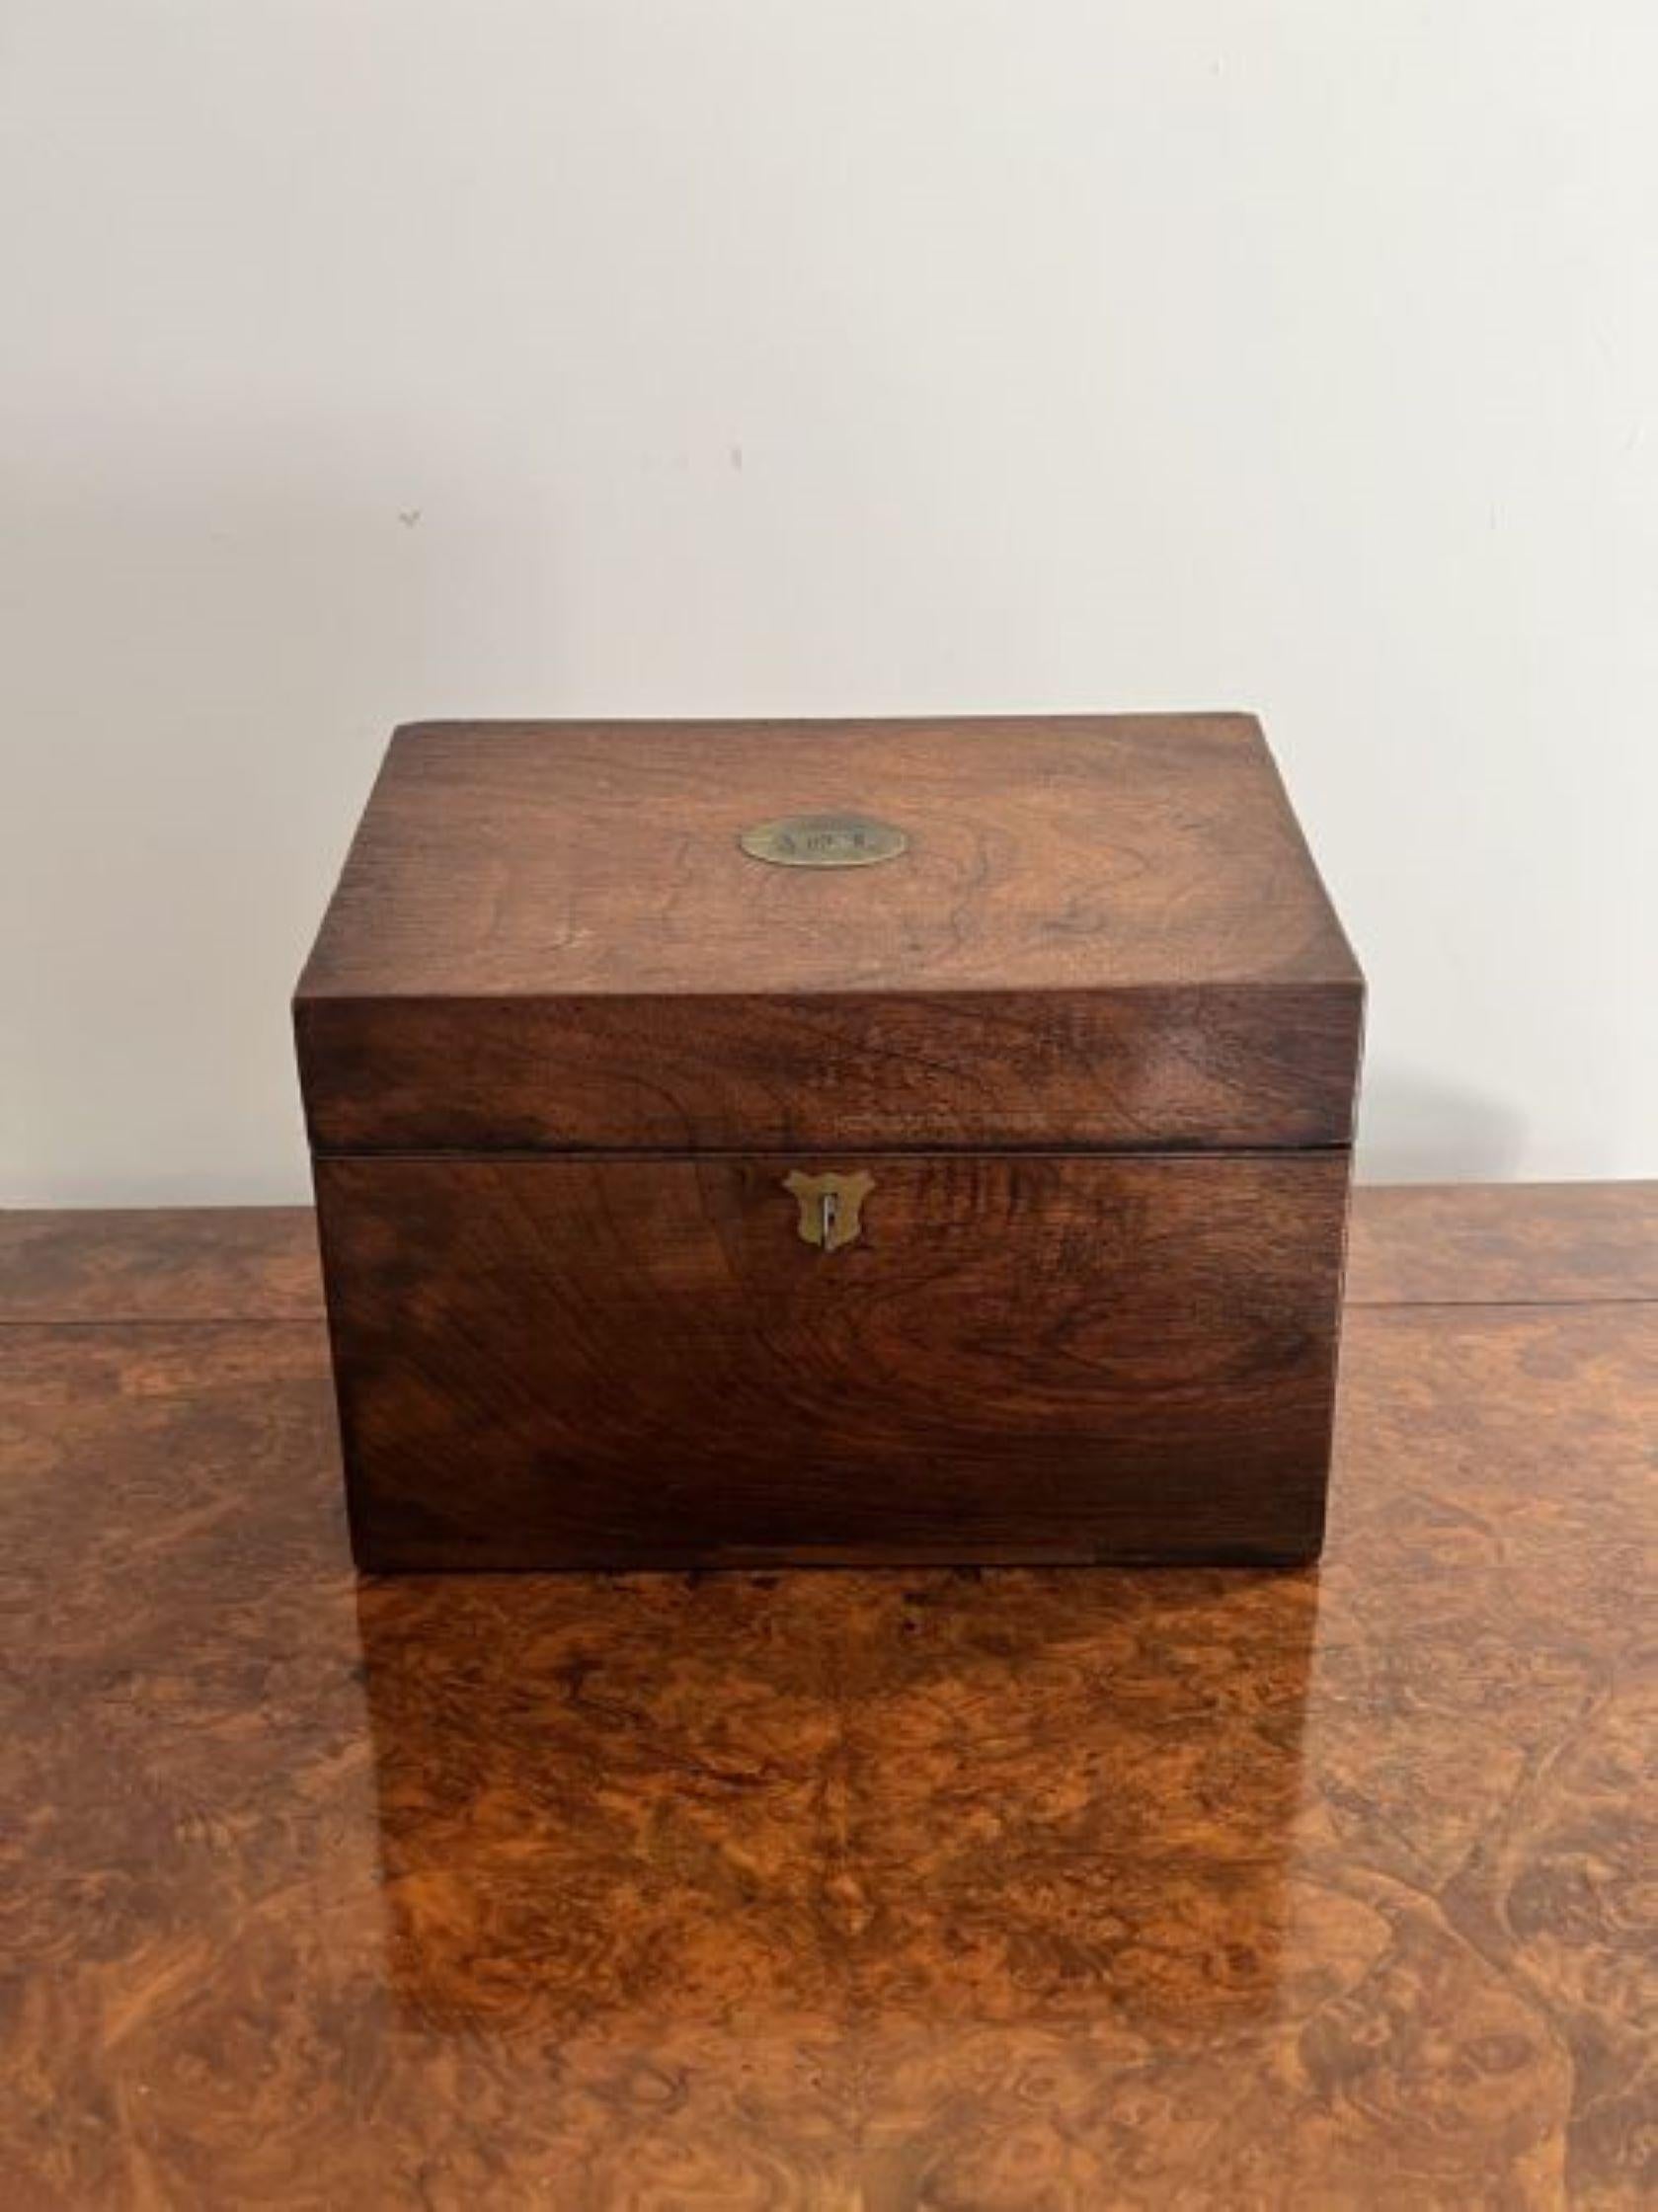 Boîte de rangement ancienne en bois de rose de qualité victorienne, avec une ouverture frontale inclinée révélant un intérieur aménagé avec des séparateurs et une plaque gravée sur le dessus. 